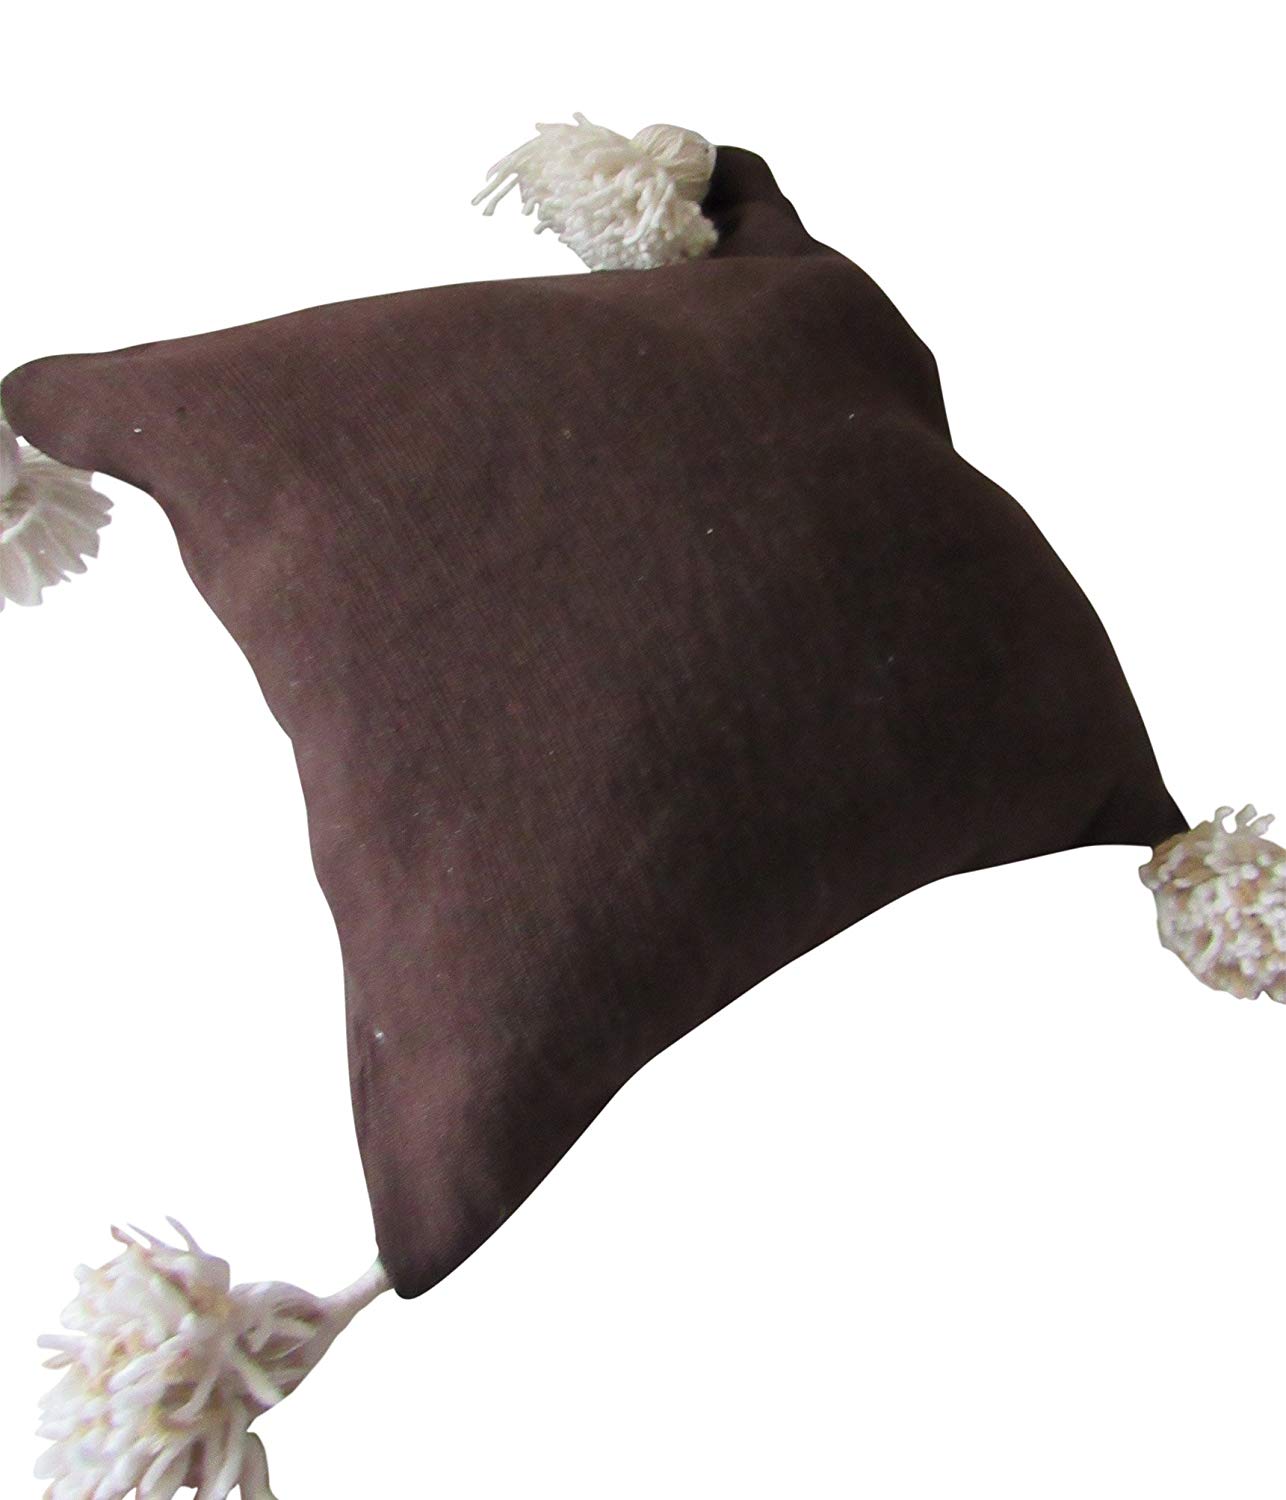 Accent Pillow-Black Tassels 18X18